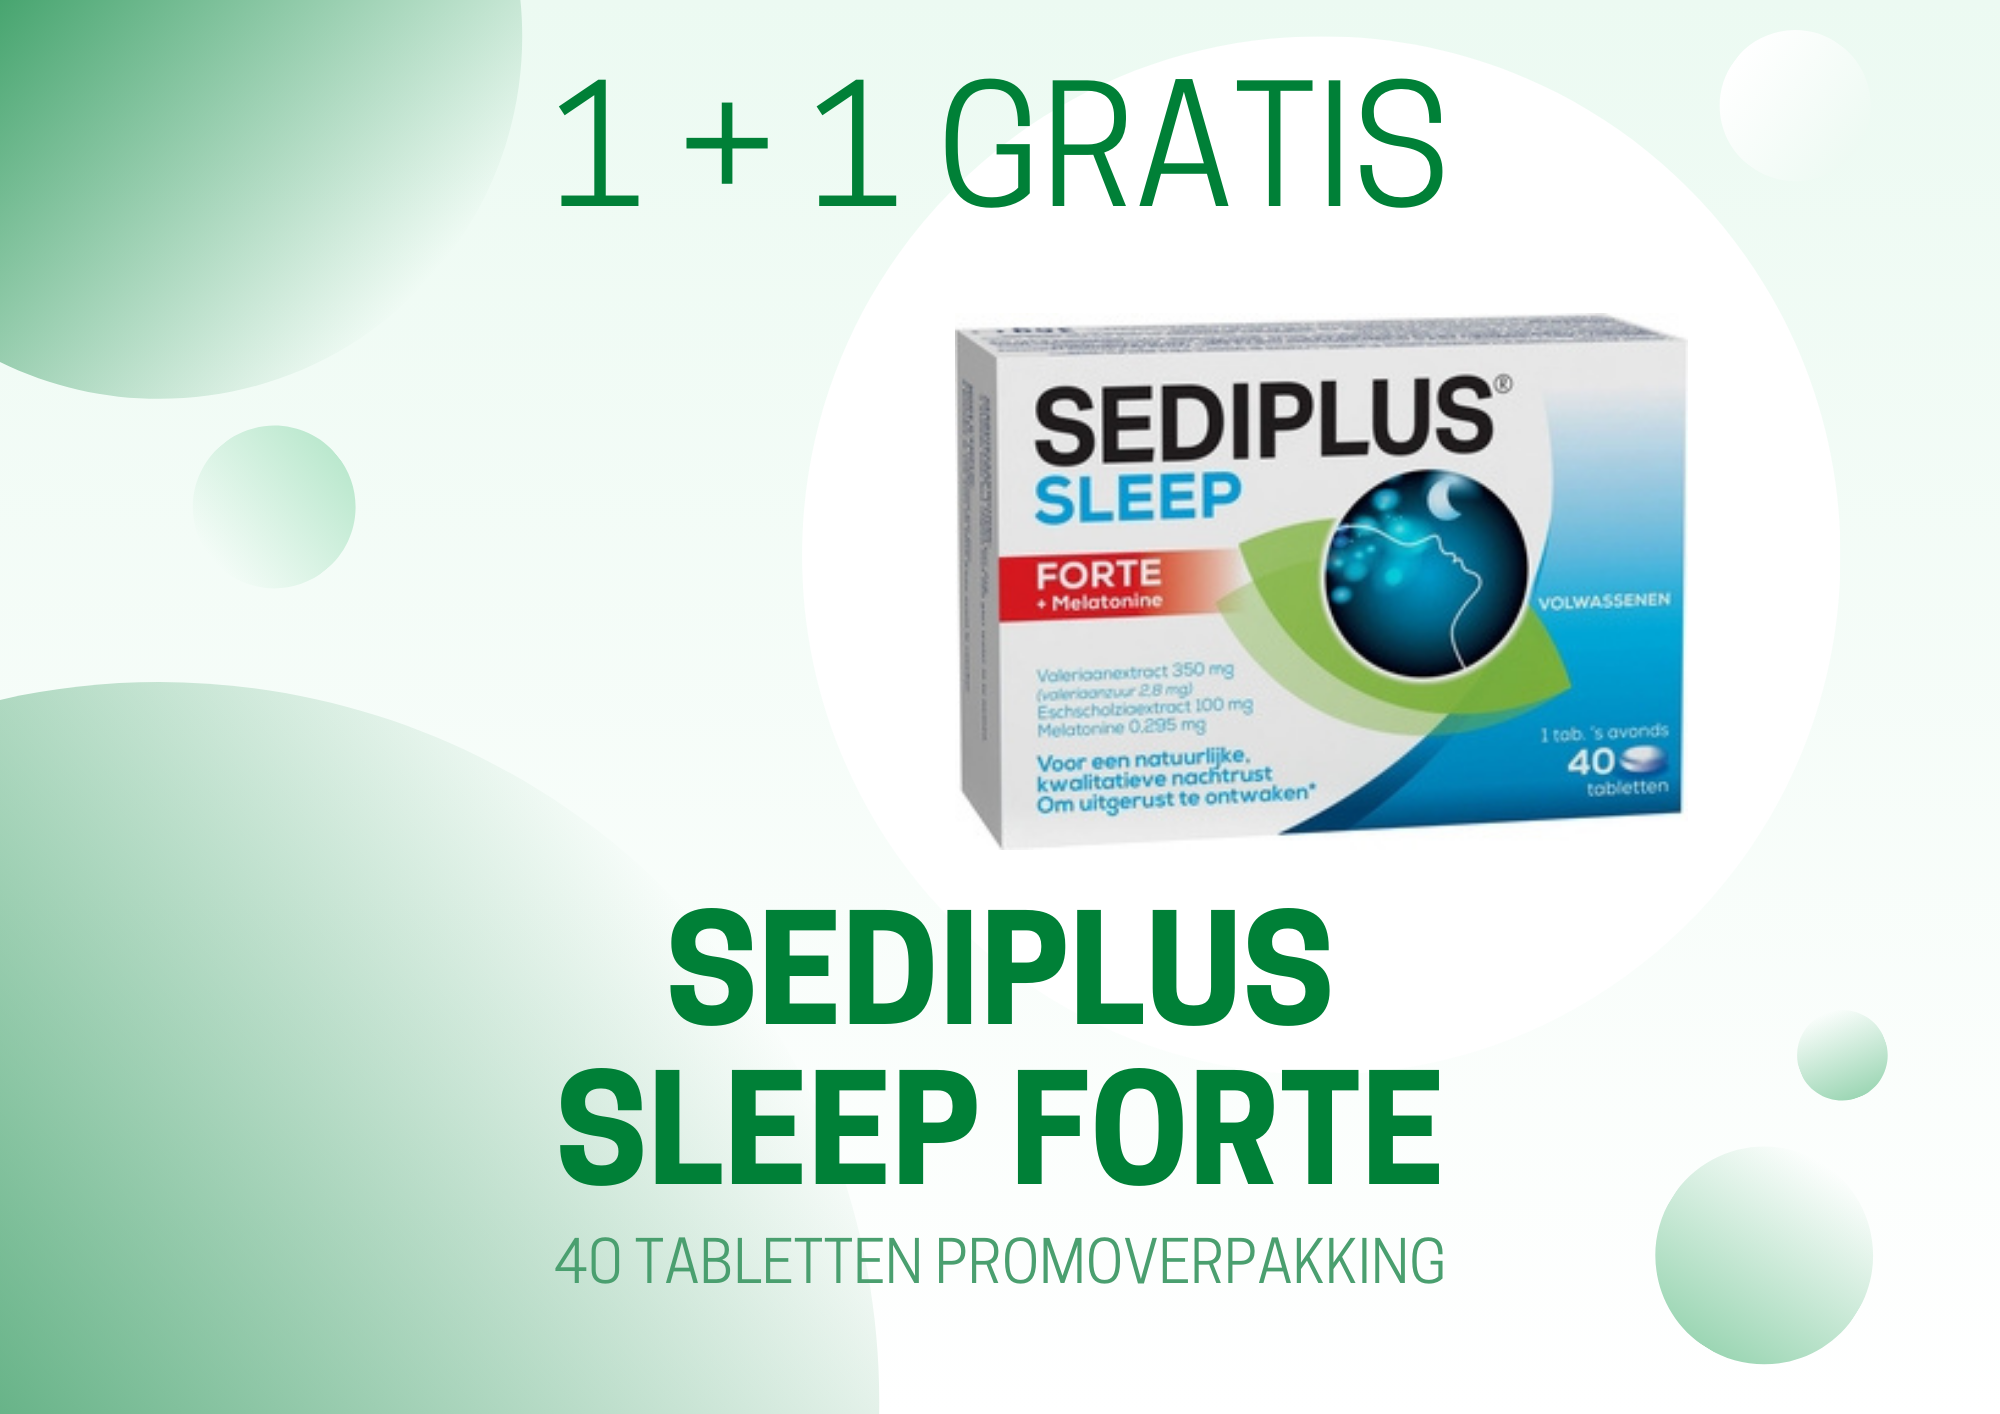 Promotie Sediplus Sleep Forte (liggend)